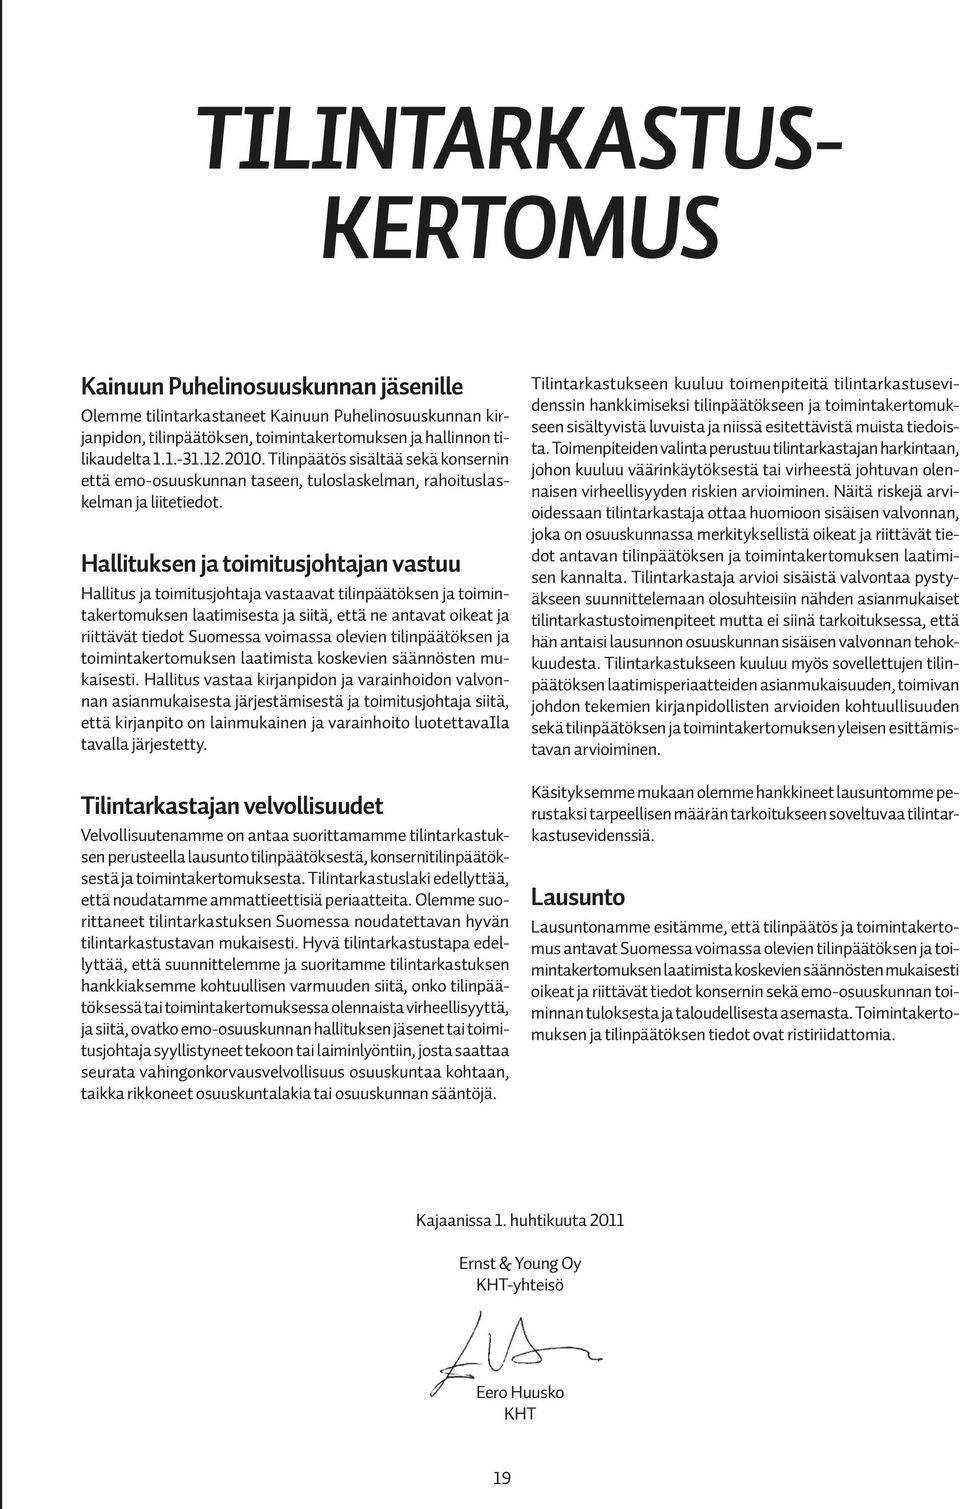 Hallituksen ja toimitusjohtajan vastuu Hallitus ja toimitusjohtaja vastaavat tilinpäätöksen ja toimintakertomuksen laatimisesta ja siitä, että ne antavat oikeat ja riittävät tiedot Suomessa voimassa